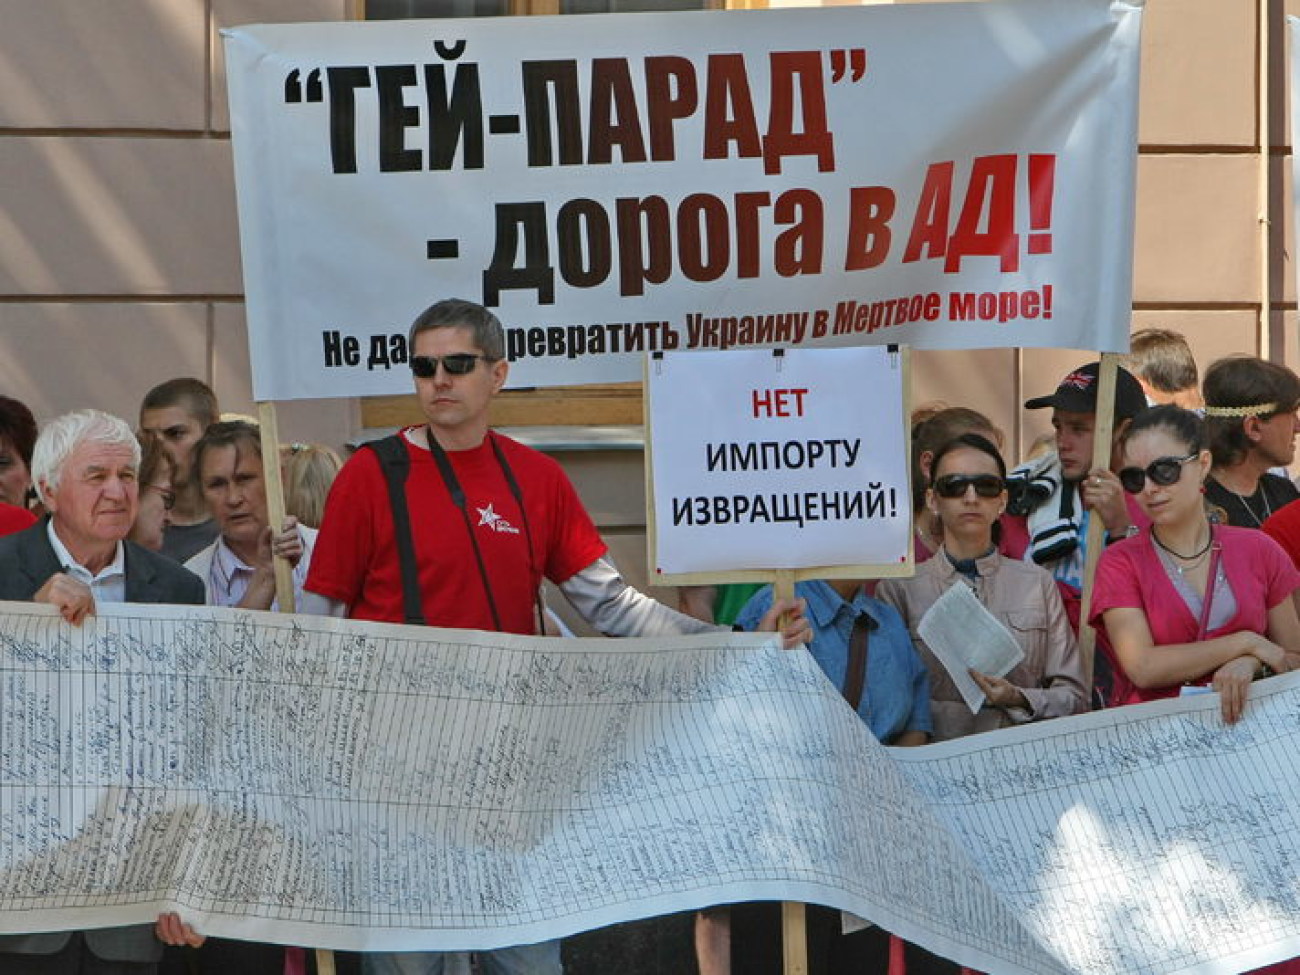 От депутатов требуют не узаконивать гомосексуализм, 2 июля 2013г.